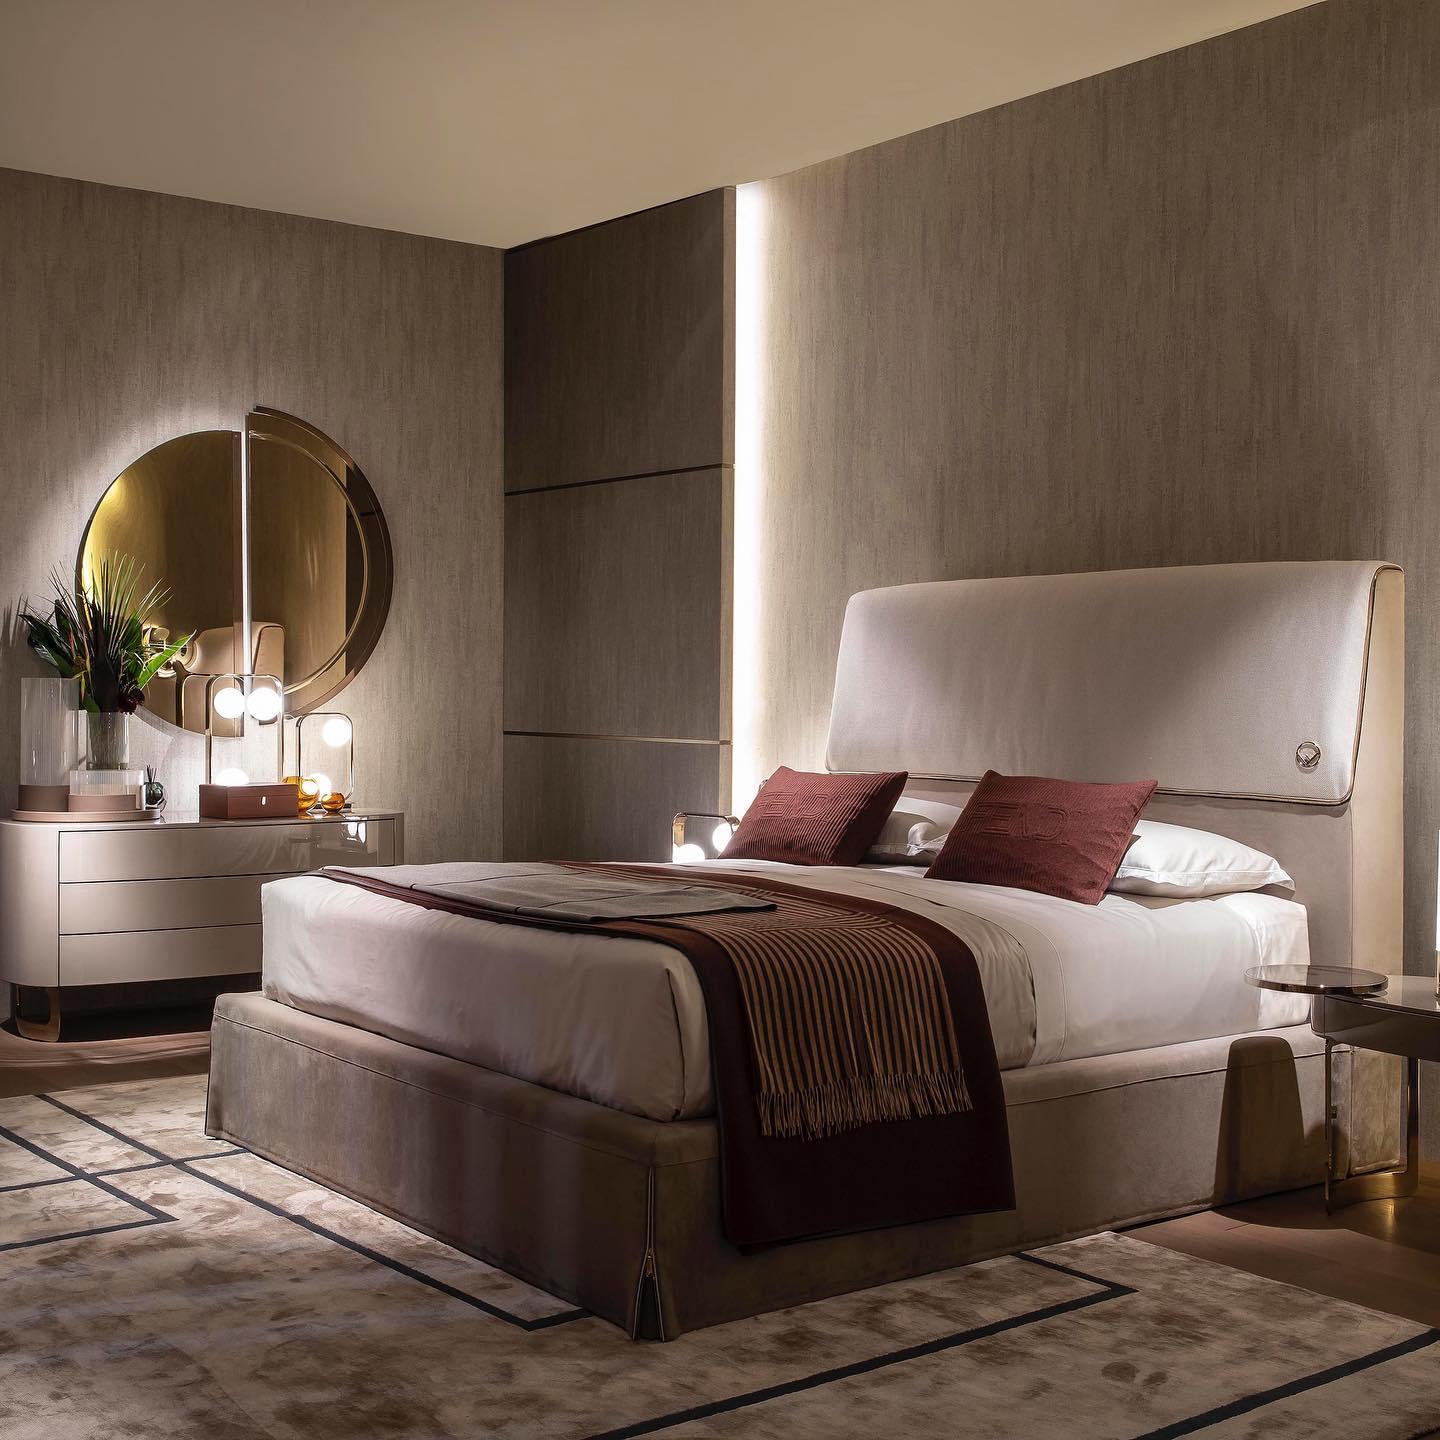 Modernes Dorian Bett Cremefarbenes Leder Handgefertigt in Italien von Fendi

Das Bett Dorian von Fendi ist ein luxuriöses Bett, das elegantes Design und Komfort für einen erholsamen Schlaf verkörpert. 

Das Bett hat weiche Linien und ein elegantes,